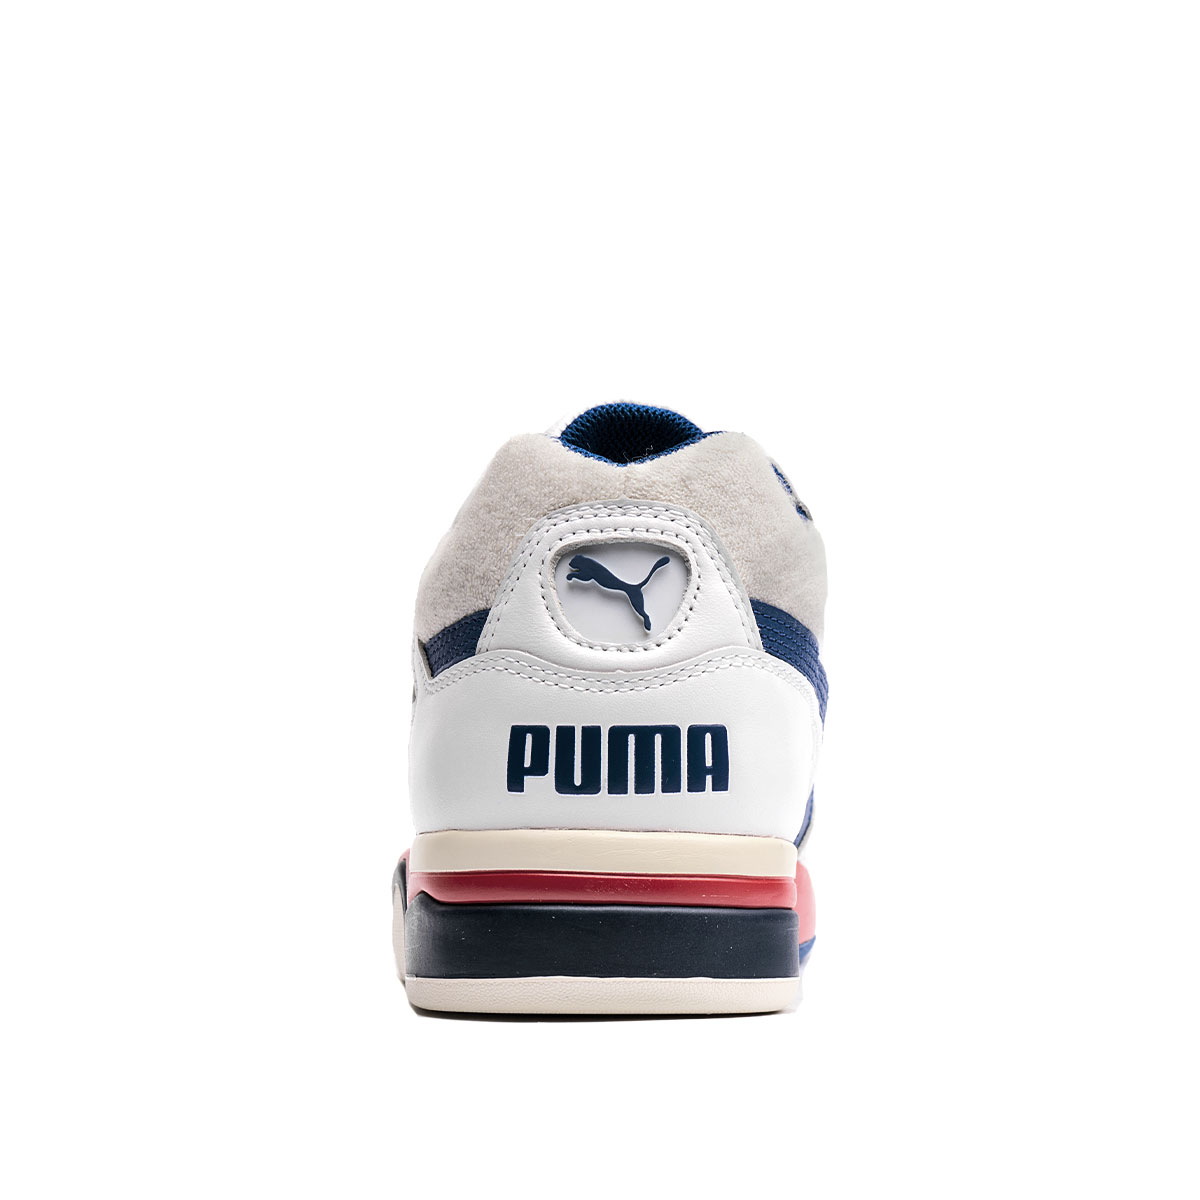 Puma Palace Guard OG  369587-01